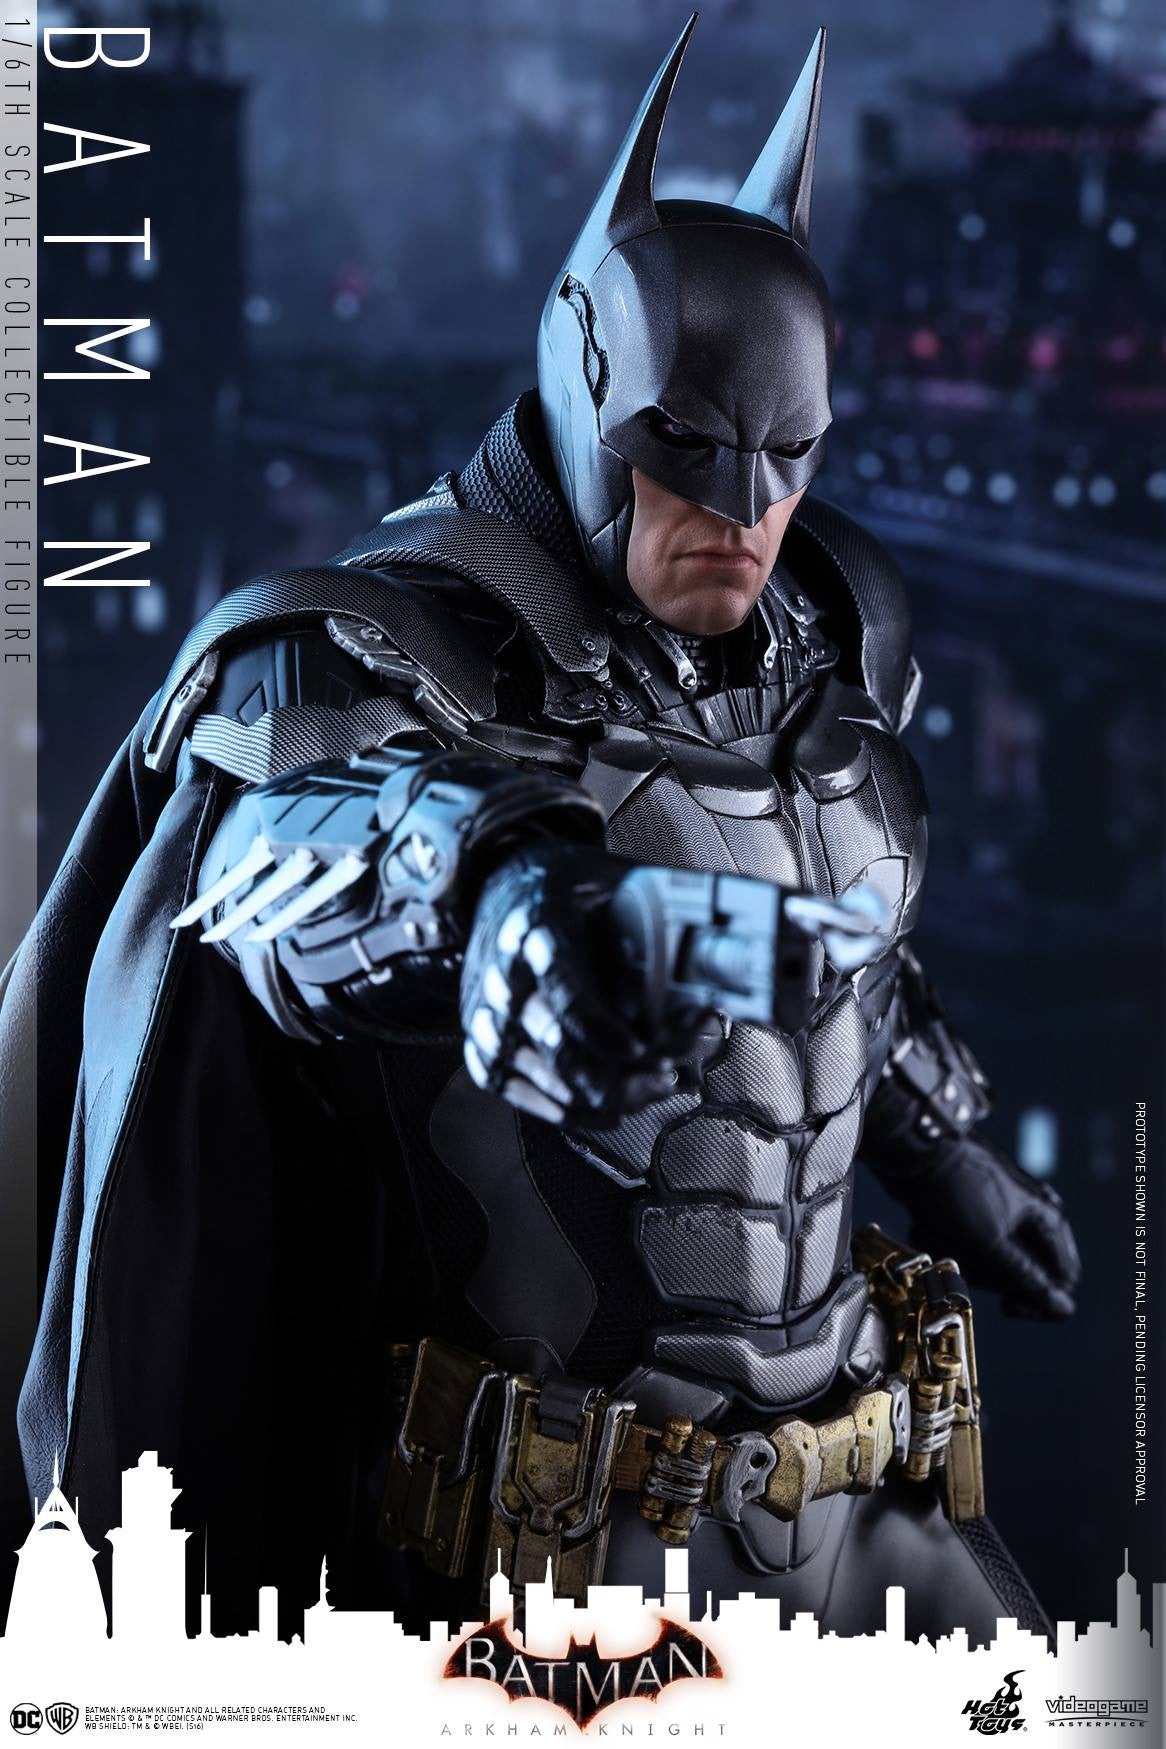 Hot Toys - VGM26 - Batman: Arkham Knight - Batman - Marvelous Toys - 6